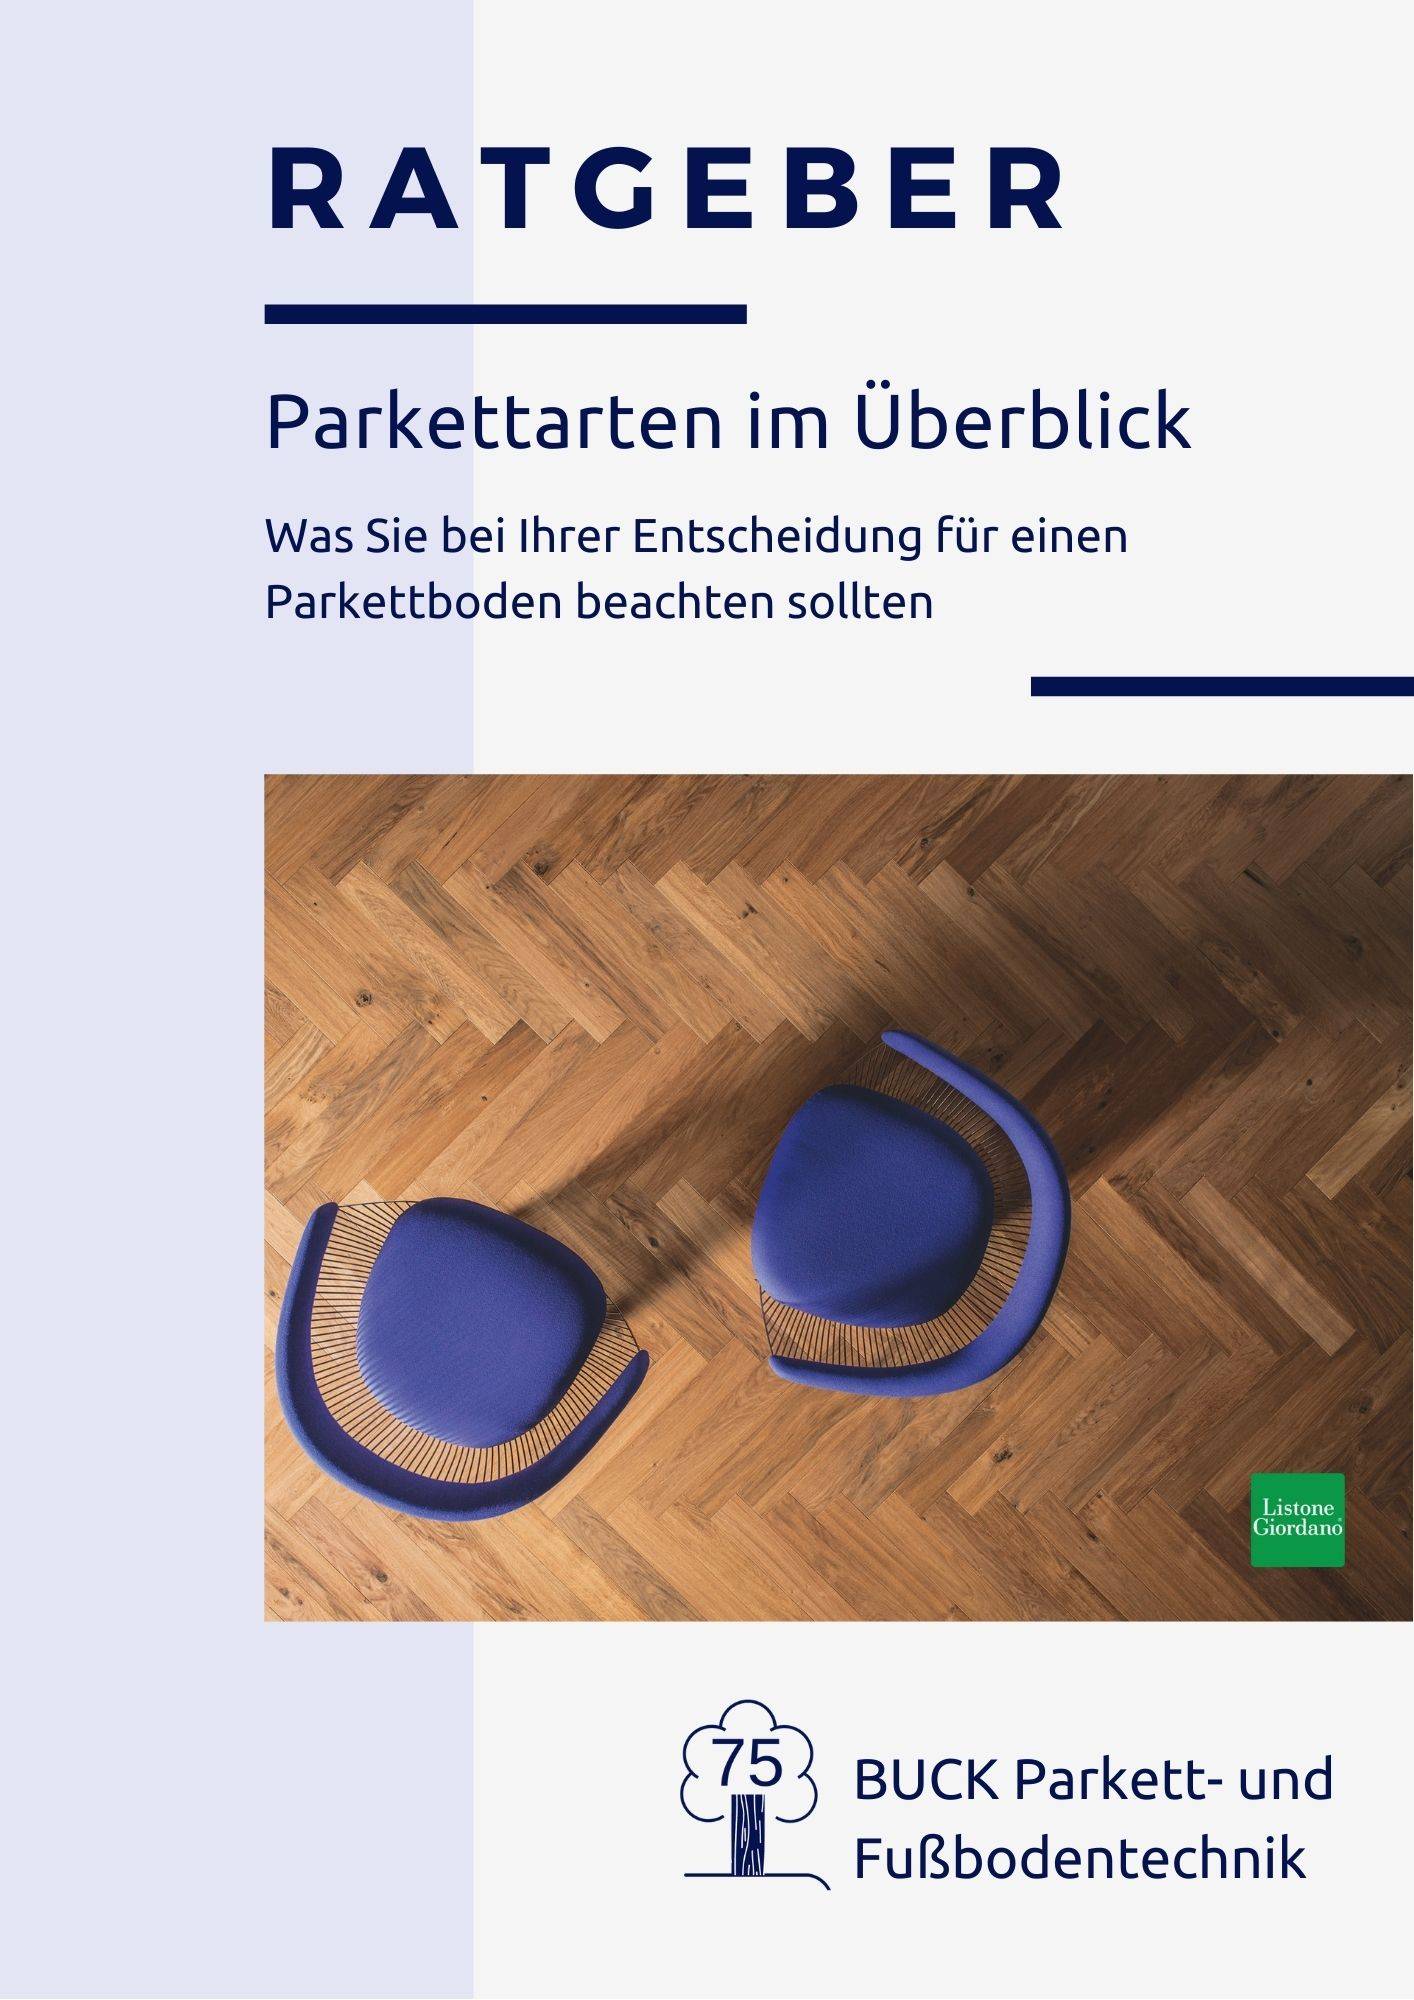 https://www.buckparkett.de/wp-content/uploads/2021/10/Ratgeber-Parkett-verlegen-Buck-Parkett.pdf